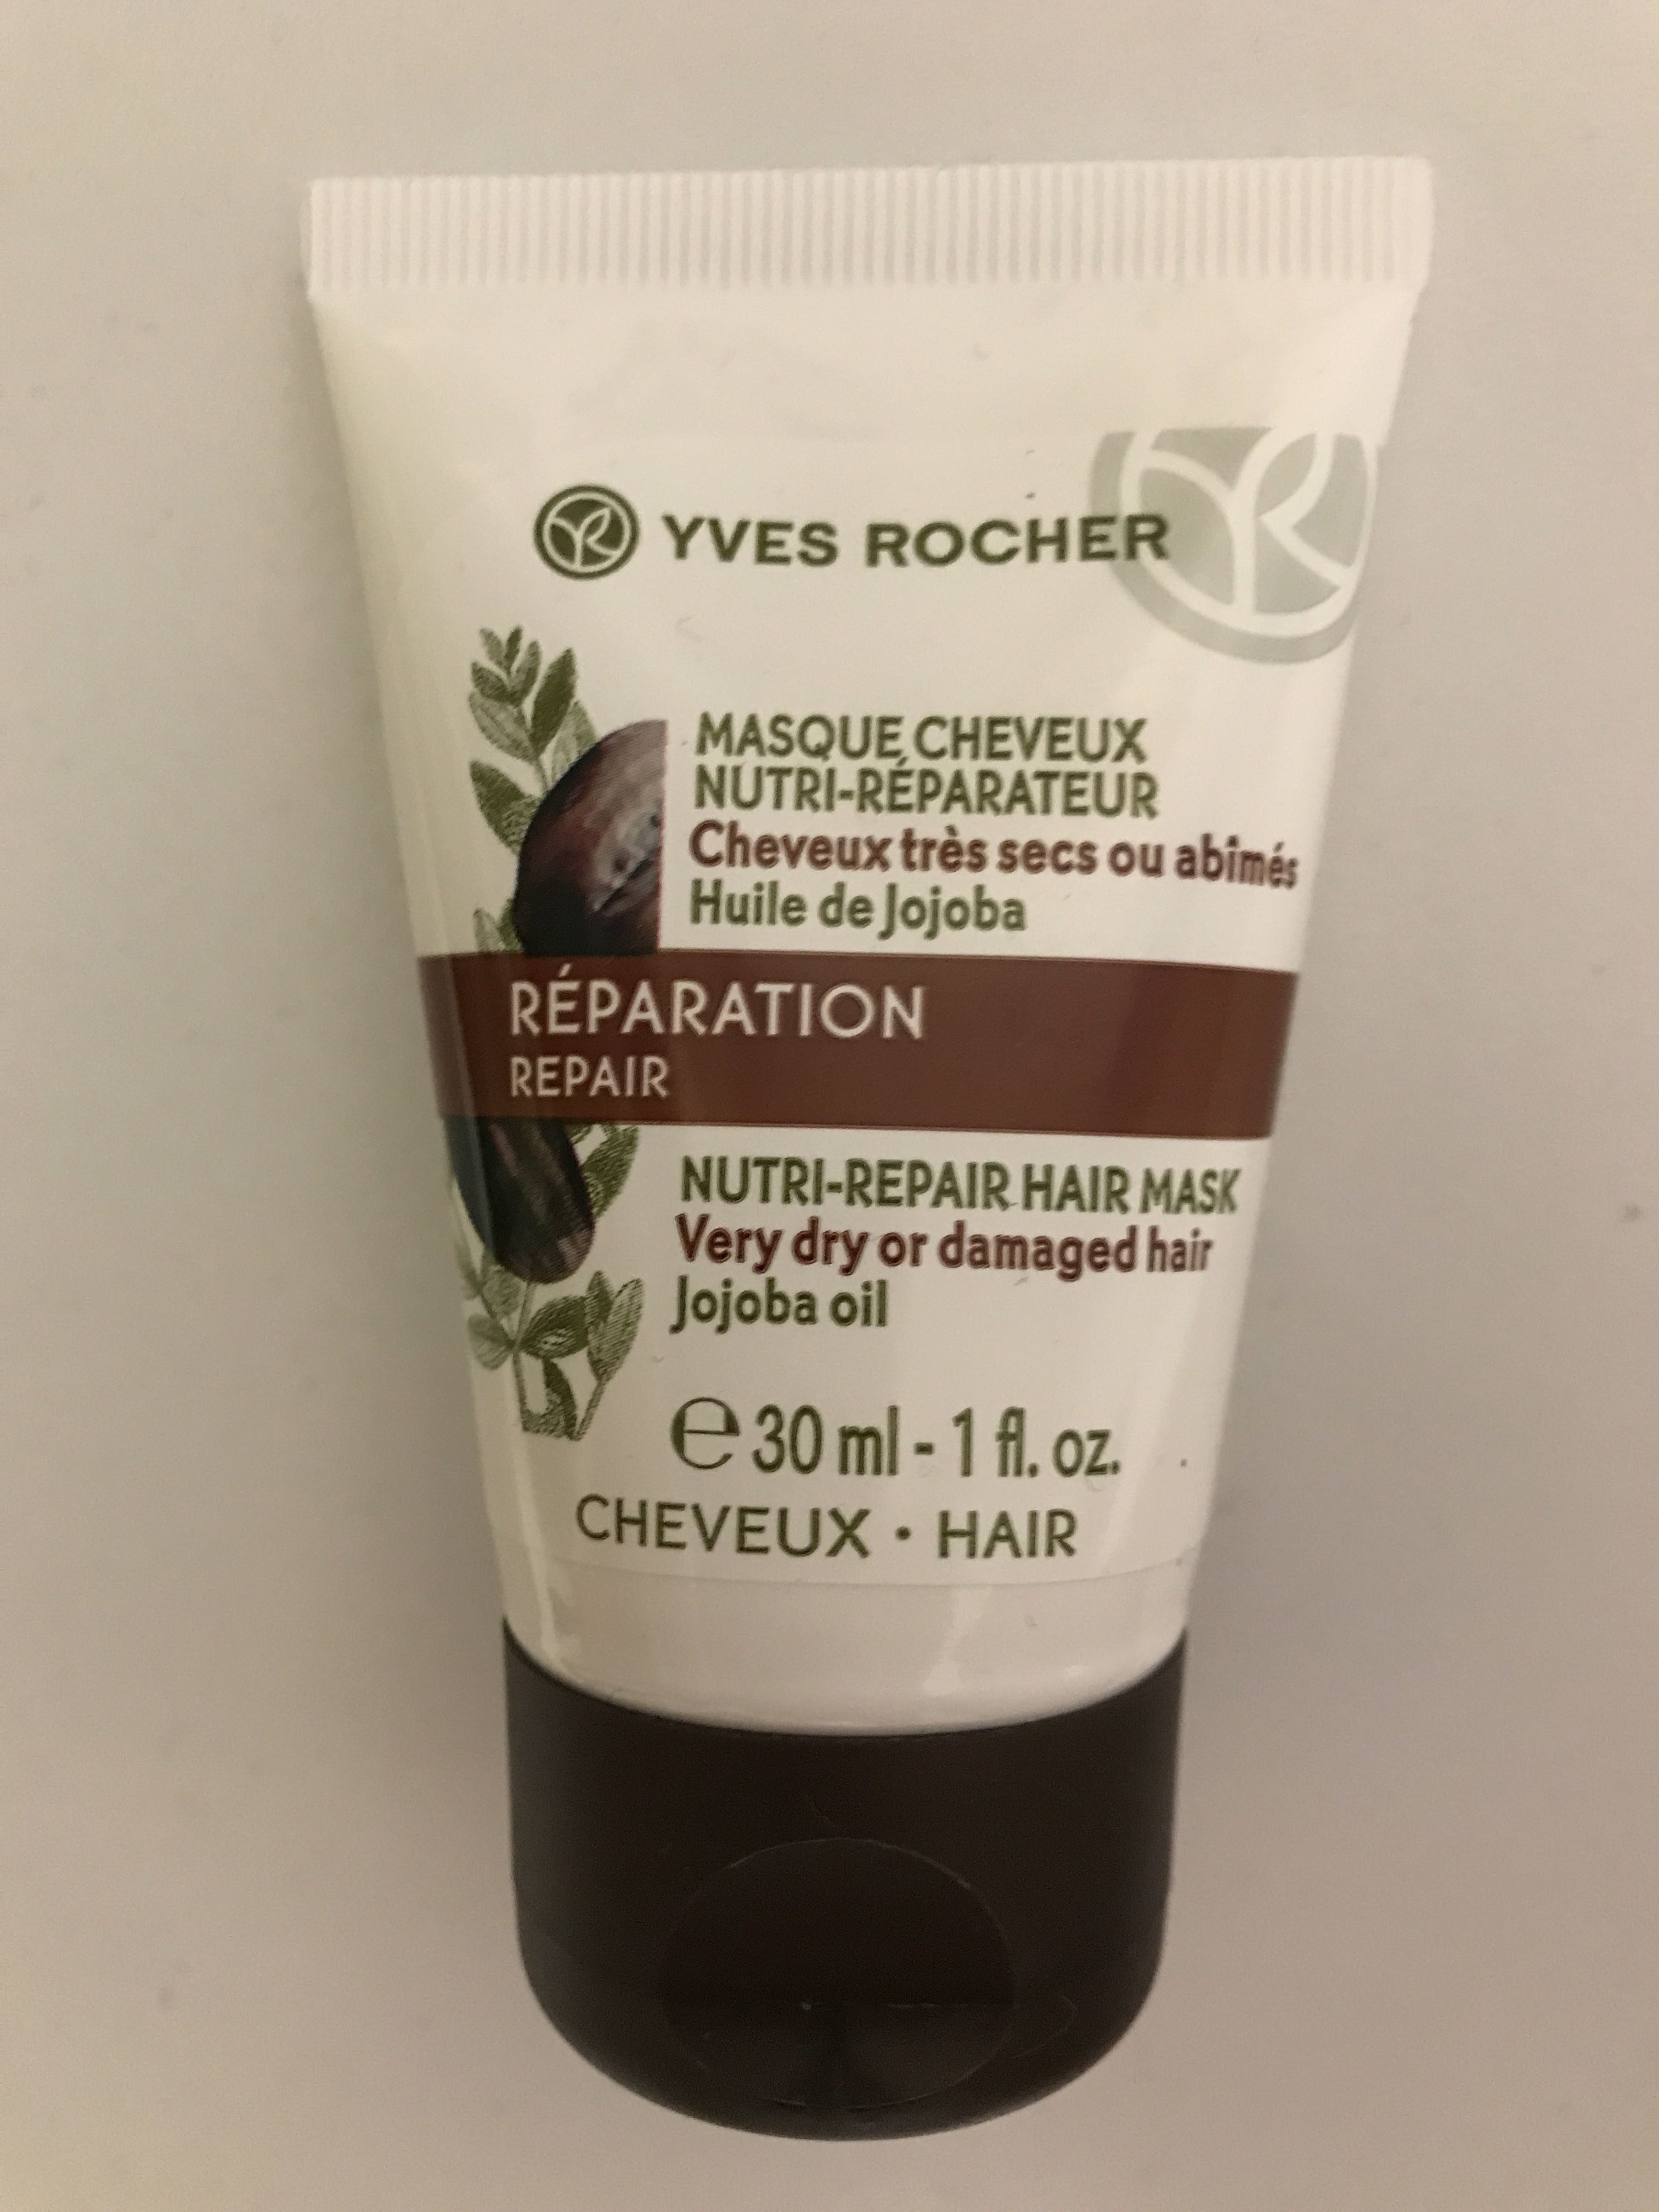 Masque Cheveux Nutri-Reparateur - Product - fr